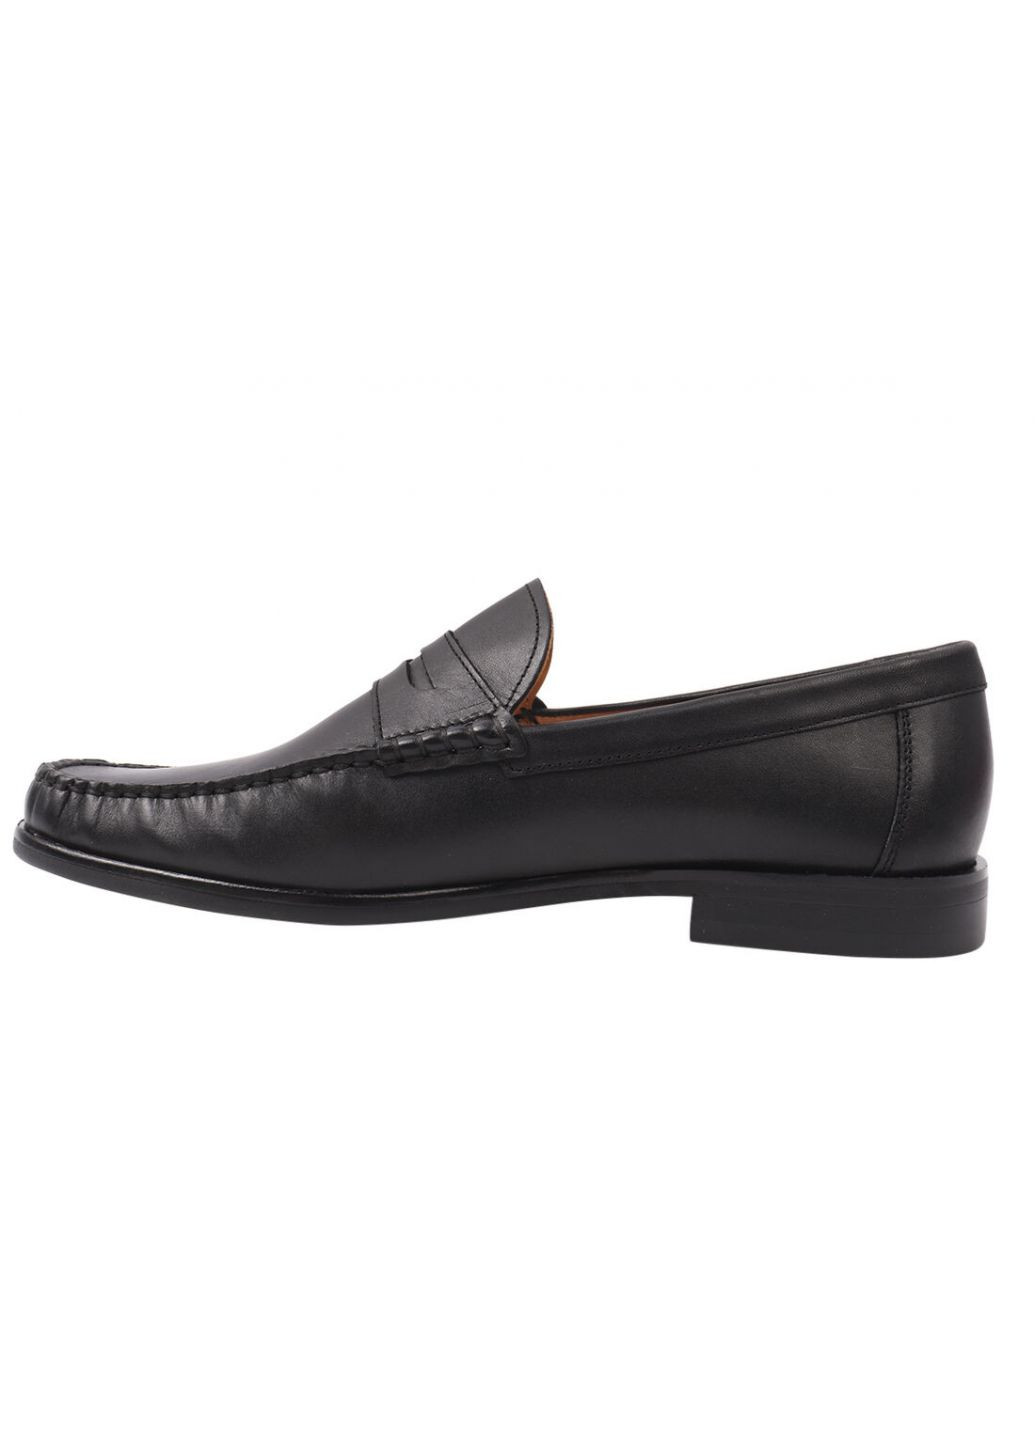 Черные туфли мужские из натуральной кожи, на низком ходу, черные, Conhpol